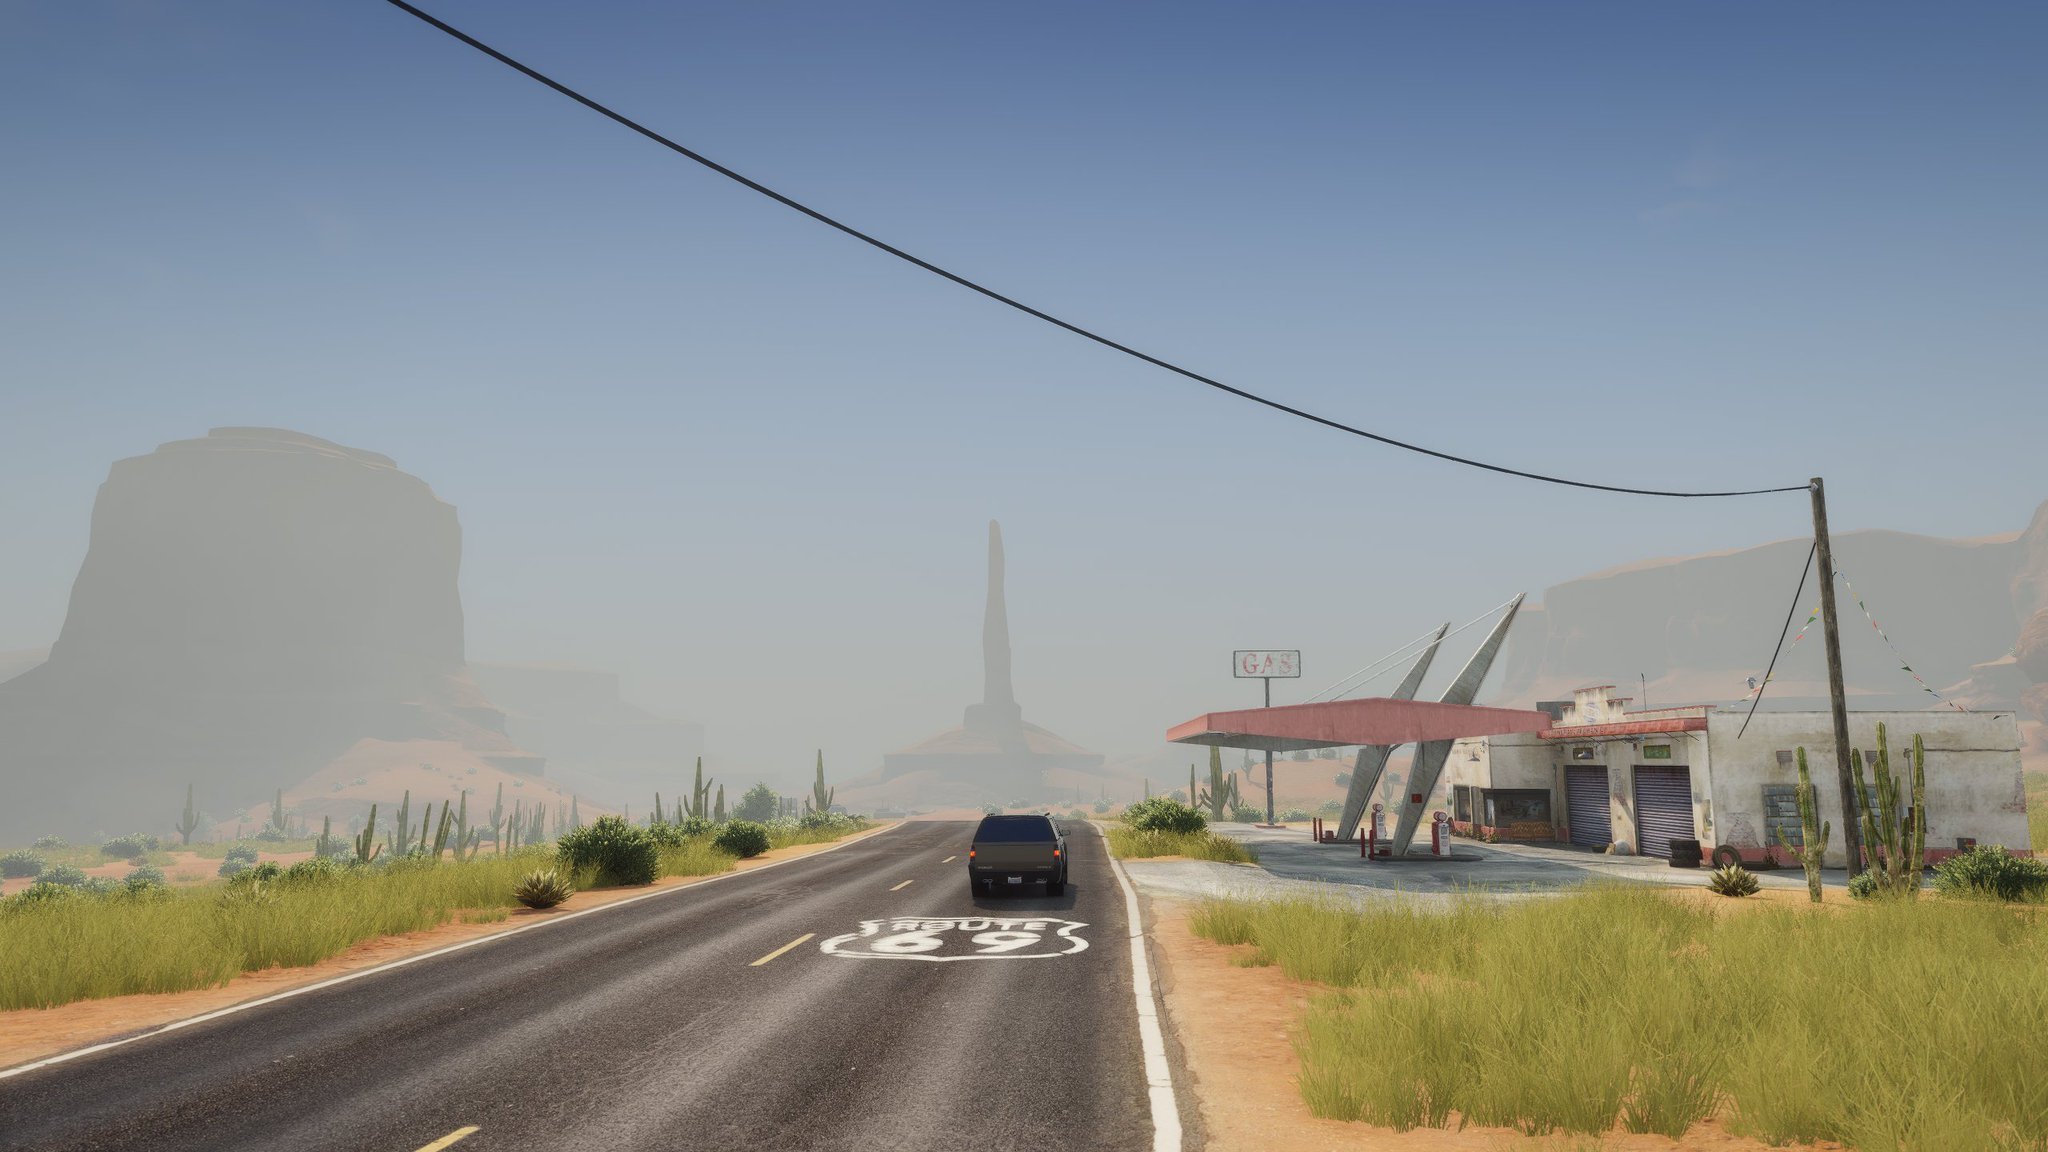 Моддеры работают над расширением карты GTA 5 — они переносят регионы из GTA: San Andreas